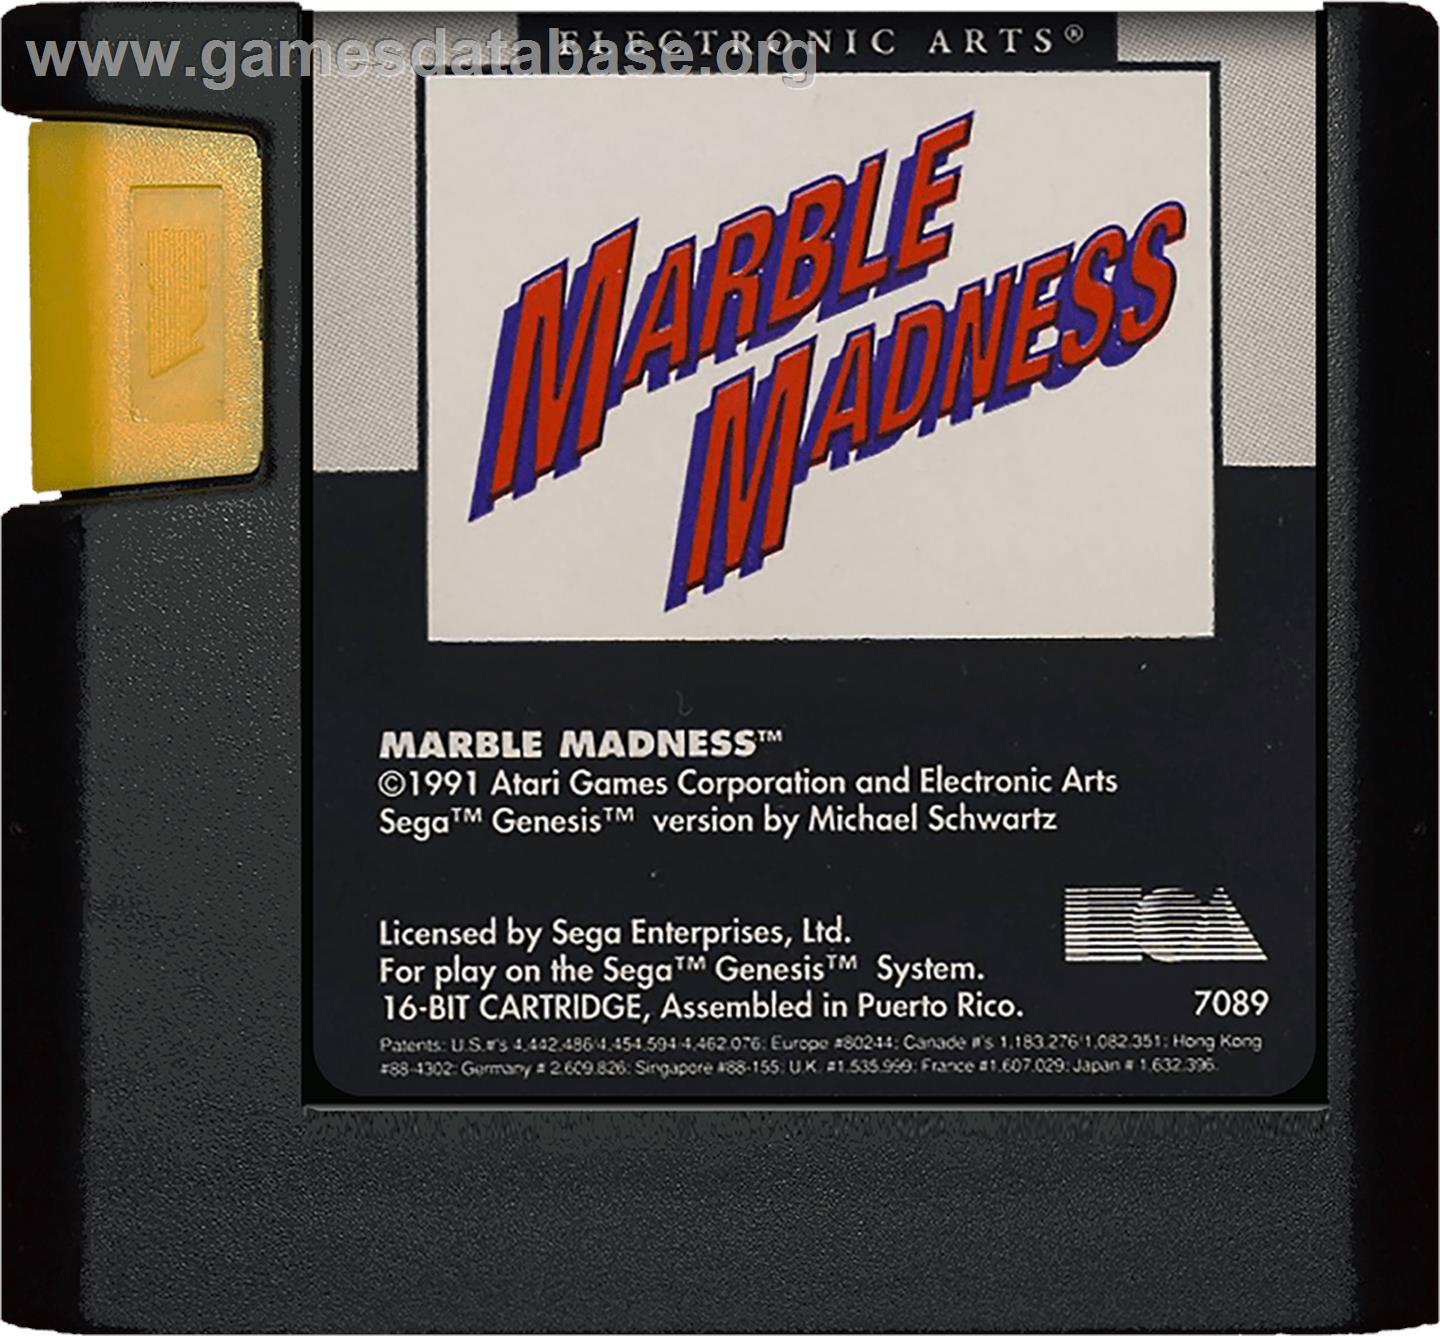 Marble Madness - Sega Genesis - Artwork - Cartridge